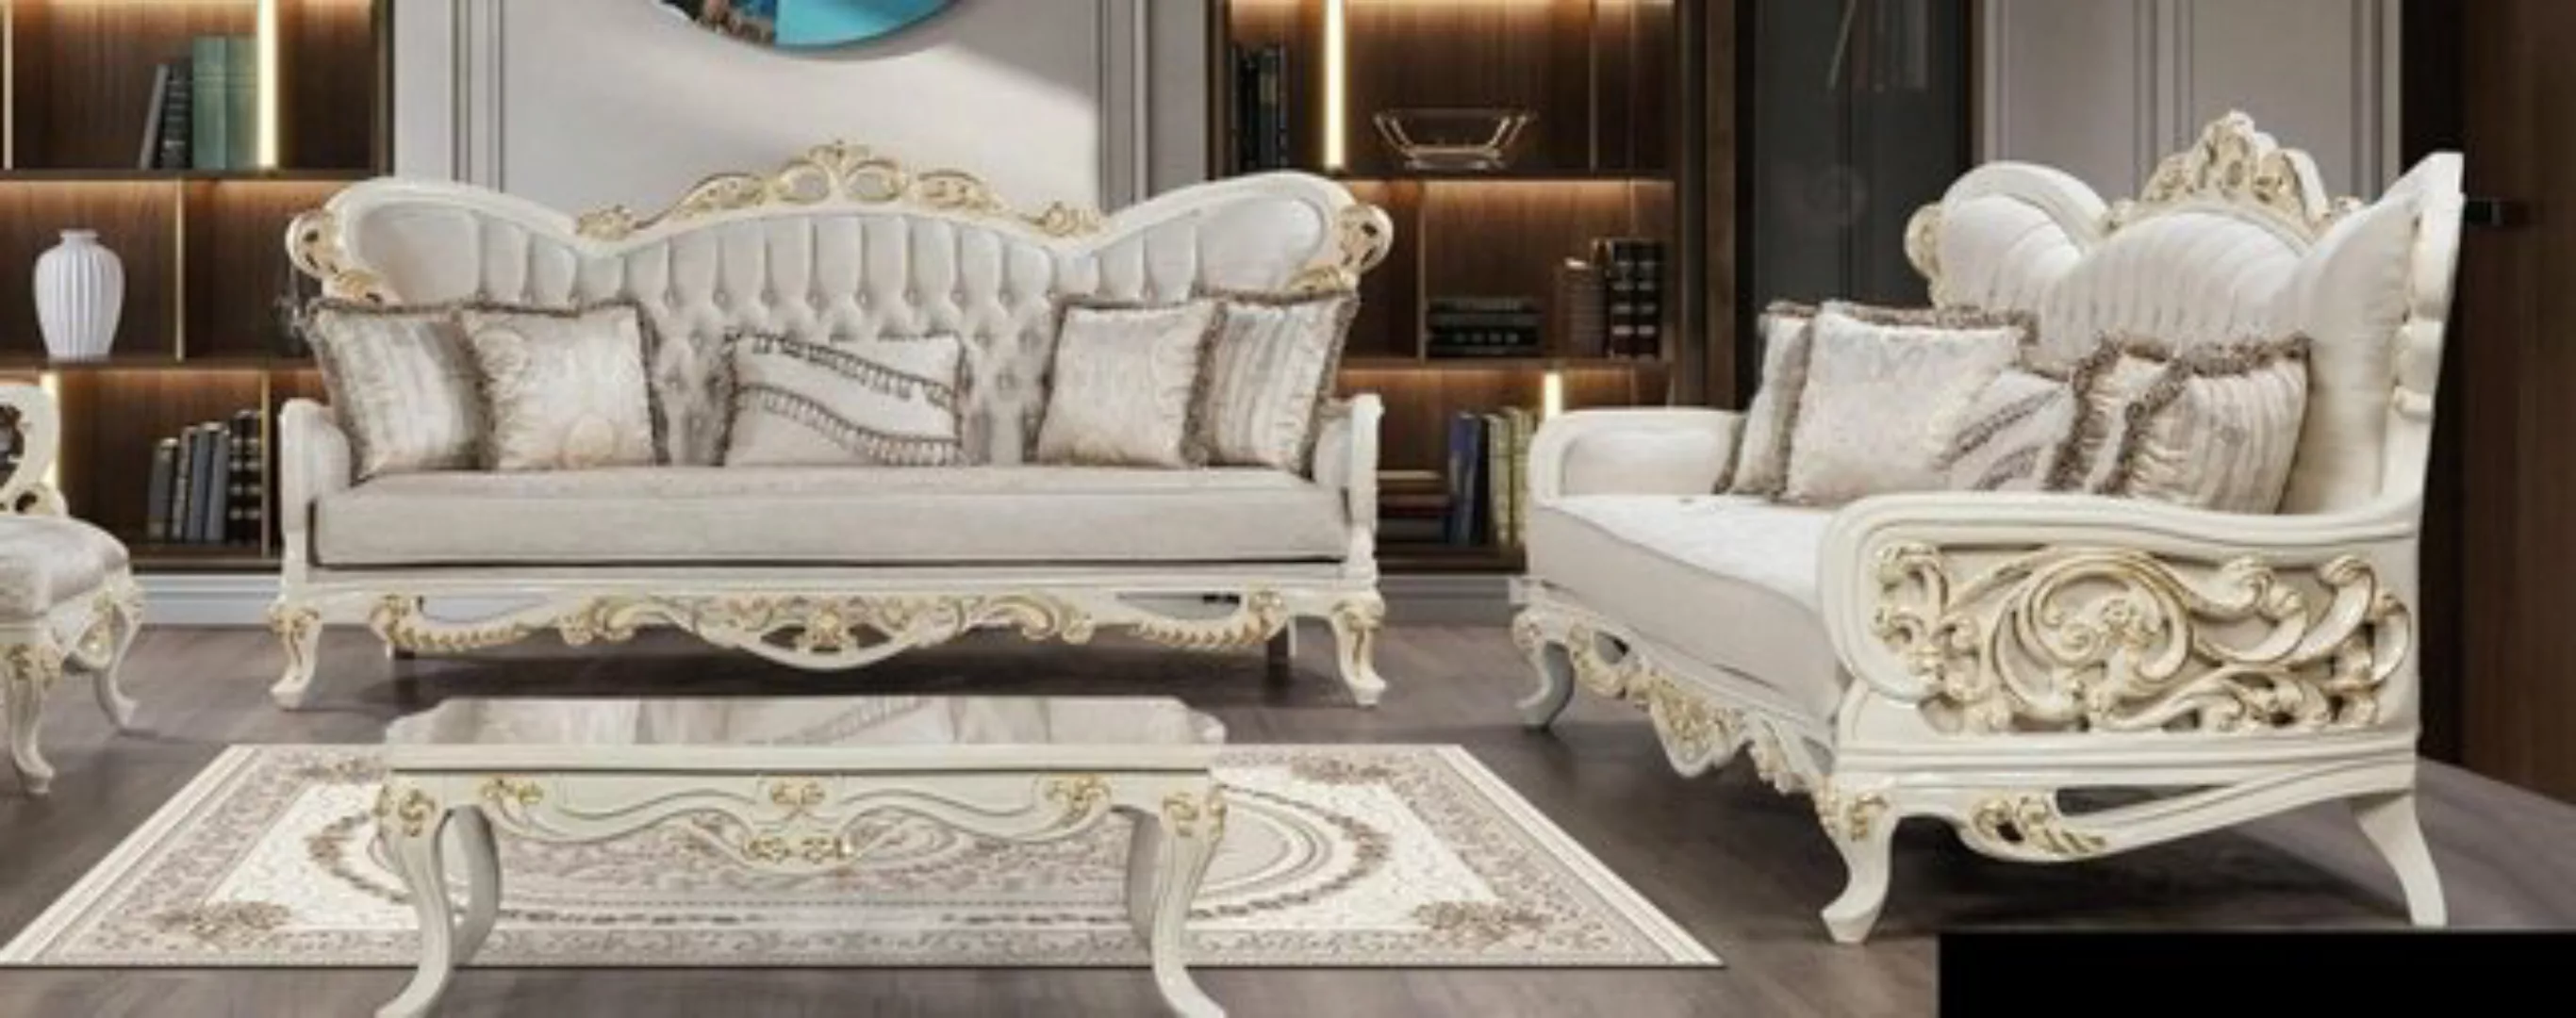 JVmoebel 3-Sitzer Sofagarnitur 3+3 Sitzer Barock Sofas Luxus Set Garnitur W günstig online kaufen